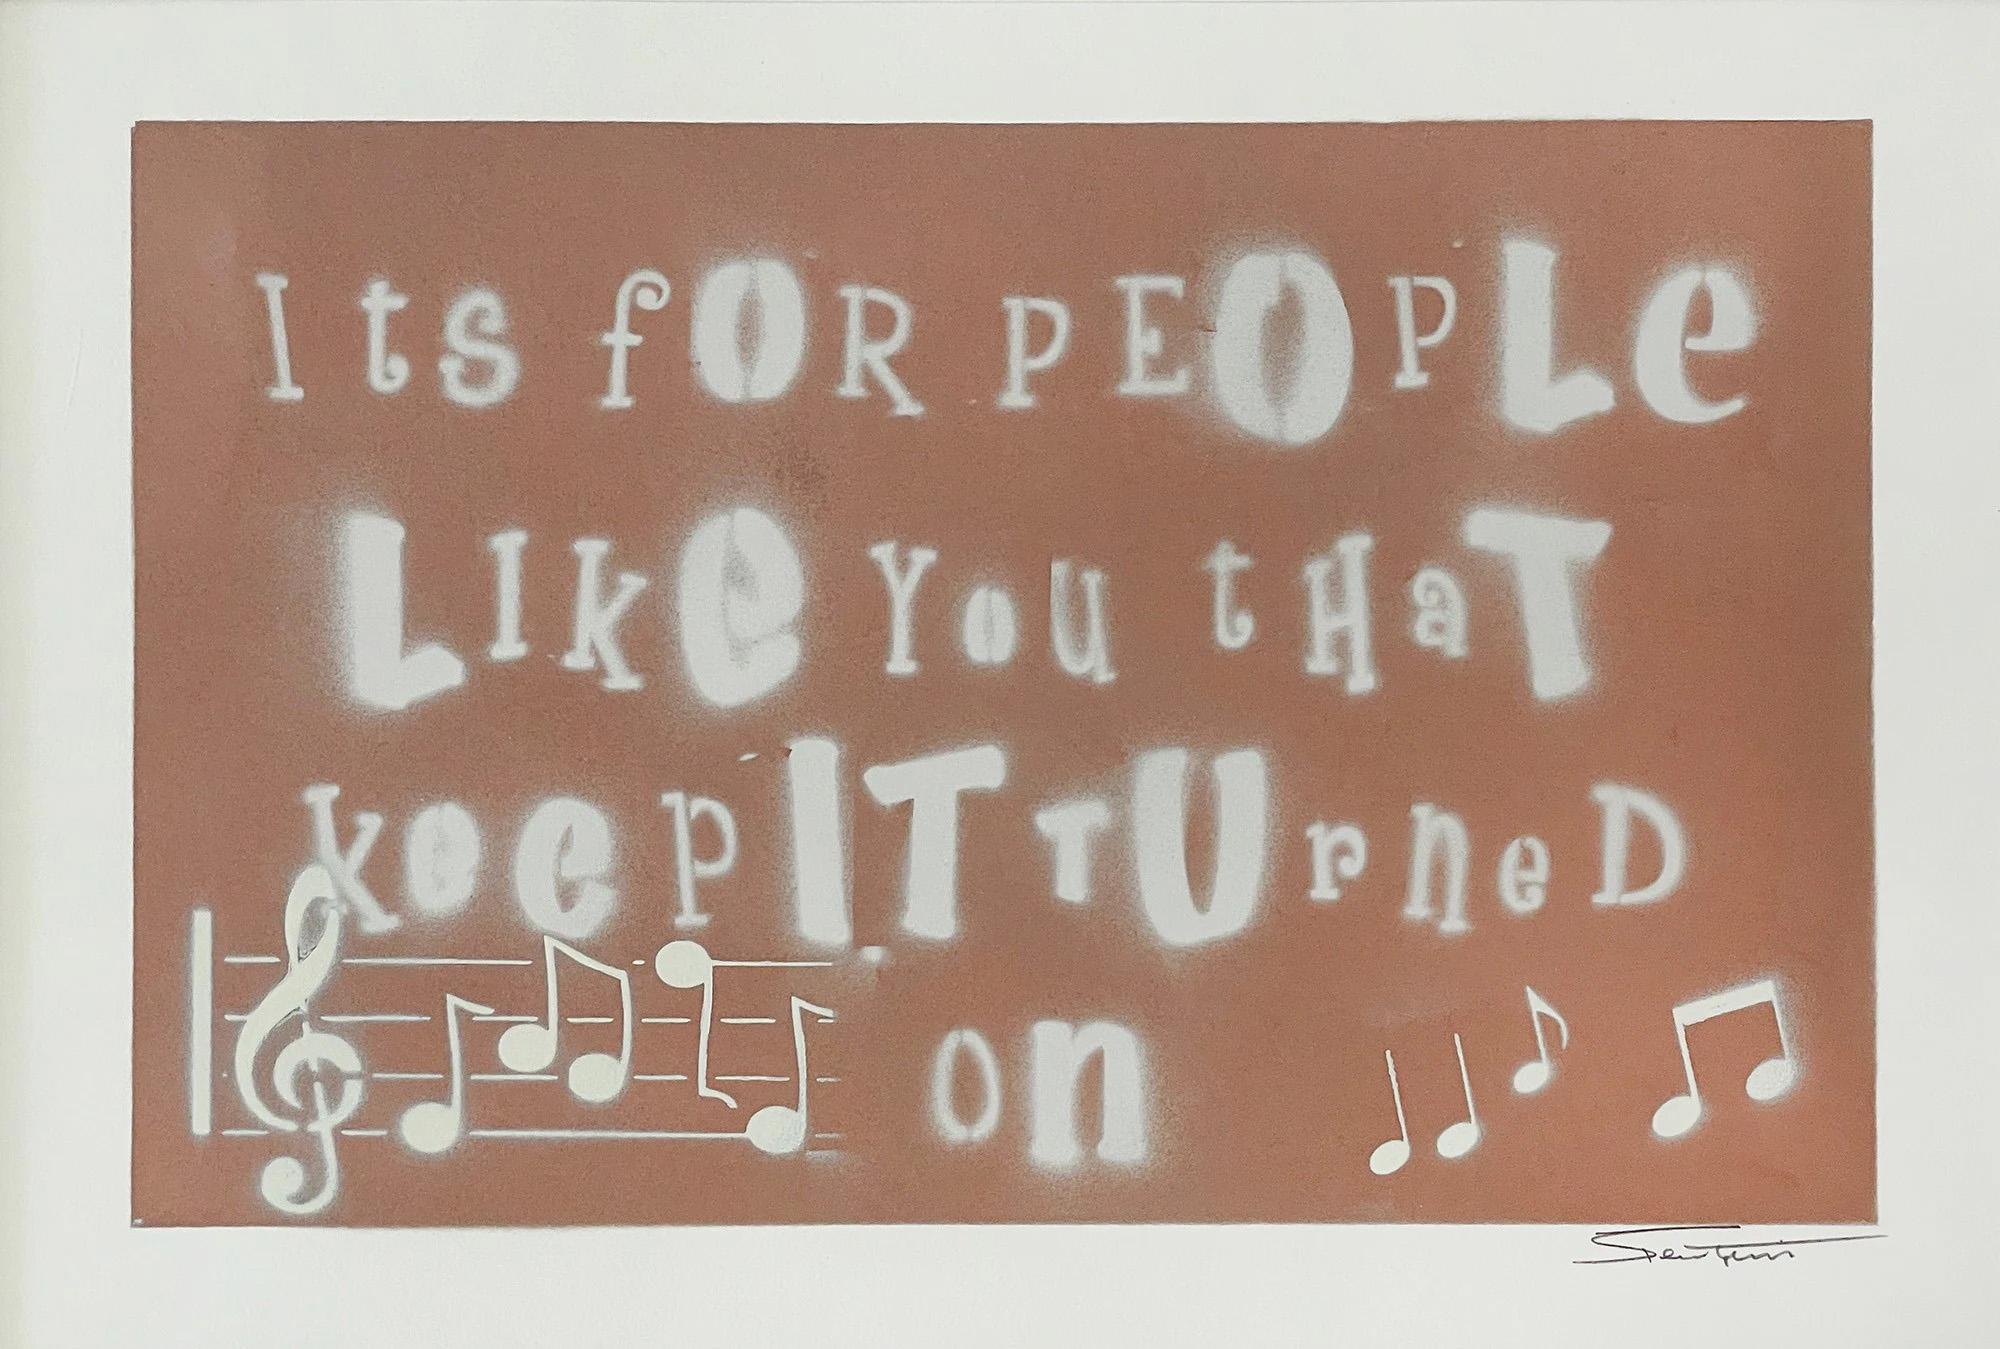 MOYEN : Technique mixte sur papier
Taille de l'image : 22" x 30"
SKU : BT0005

Bernie Taupin considère l'art comme une extension visuelle des paroles de ses chansons. Inspiré par "Your Song", sorti en 1971.